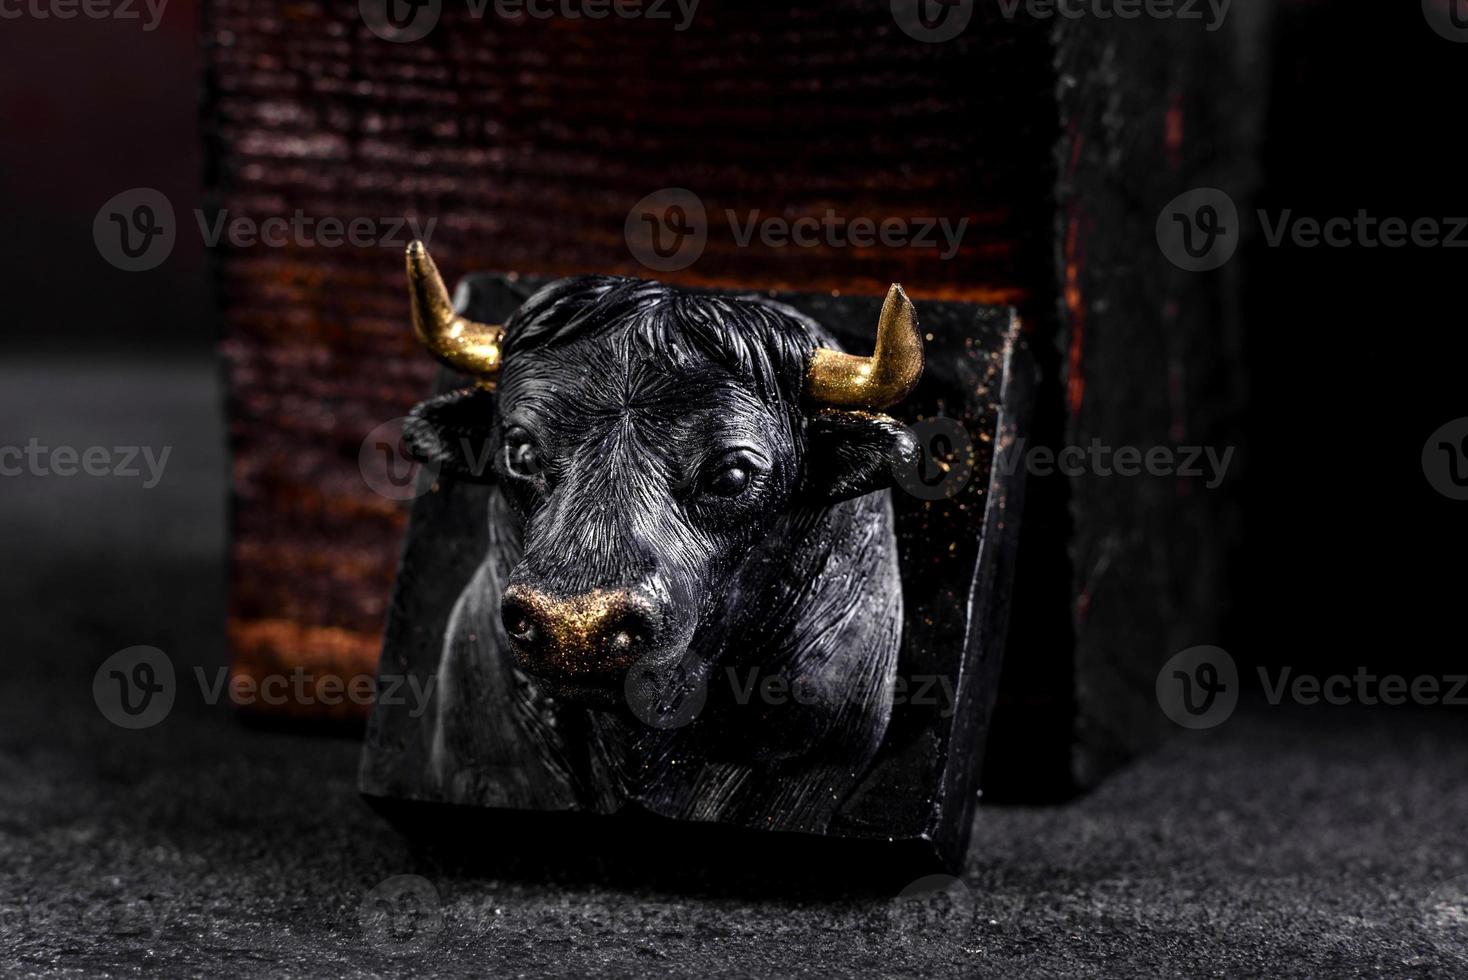 figuren av en tjur gjord av tvål i present foto